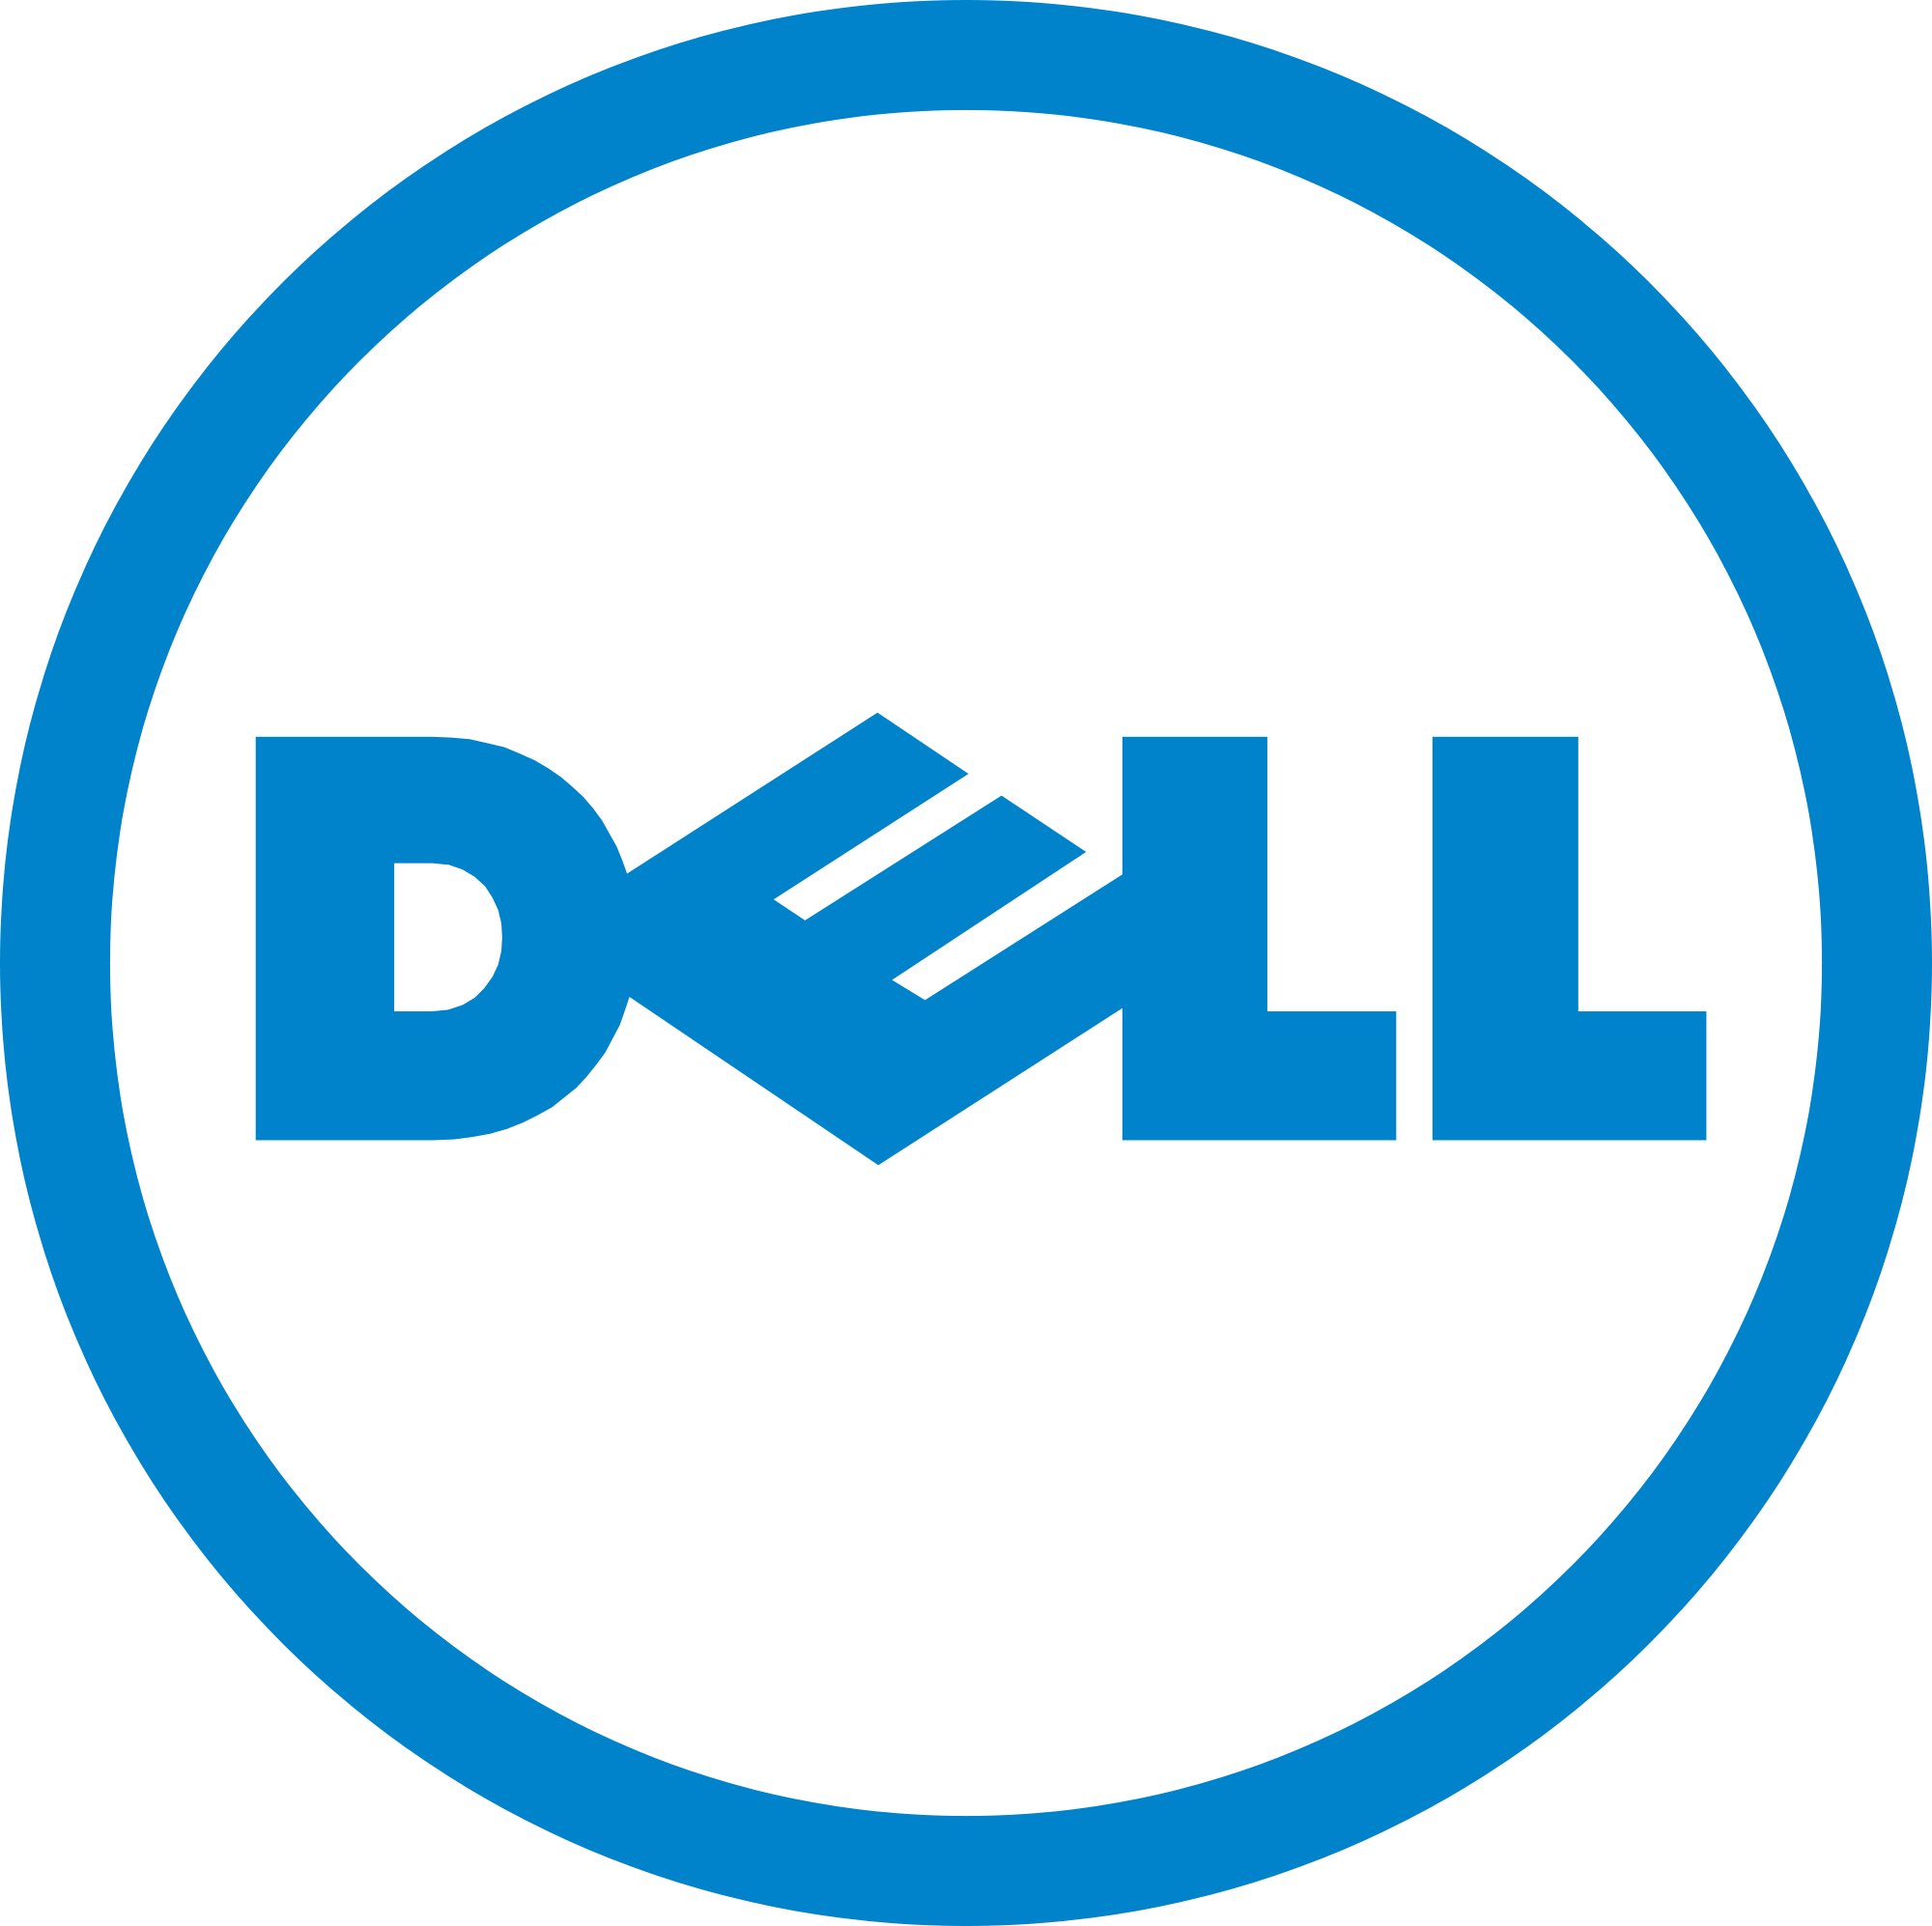 제조업체 Dell의 그림